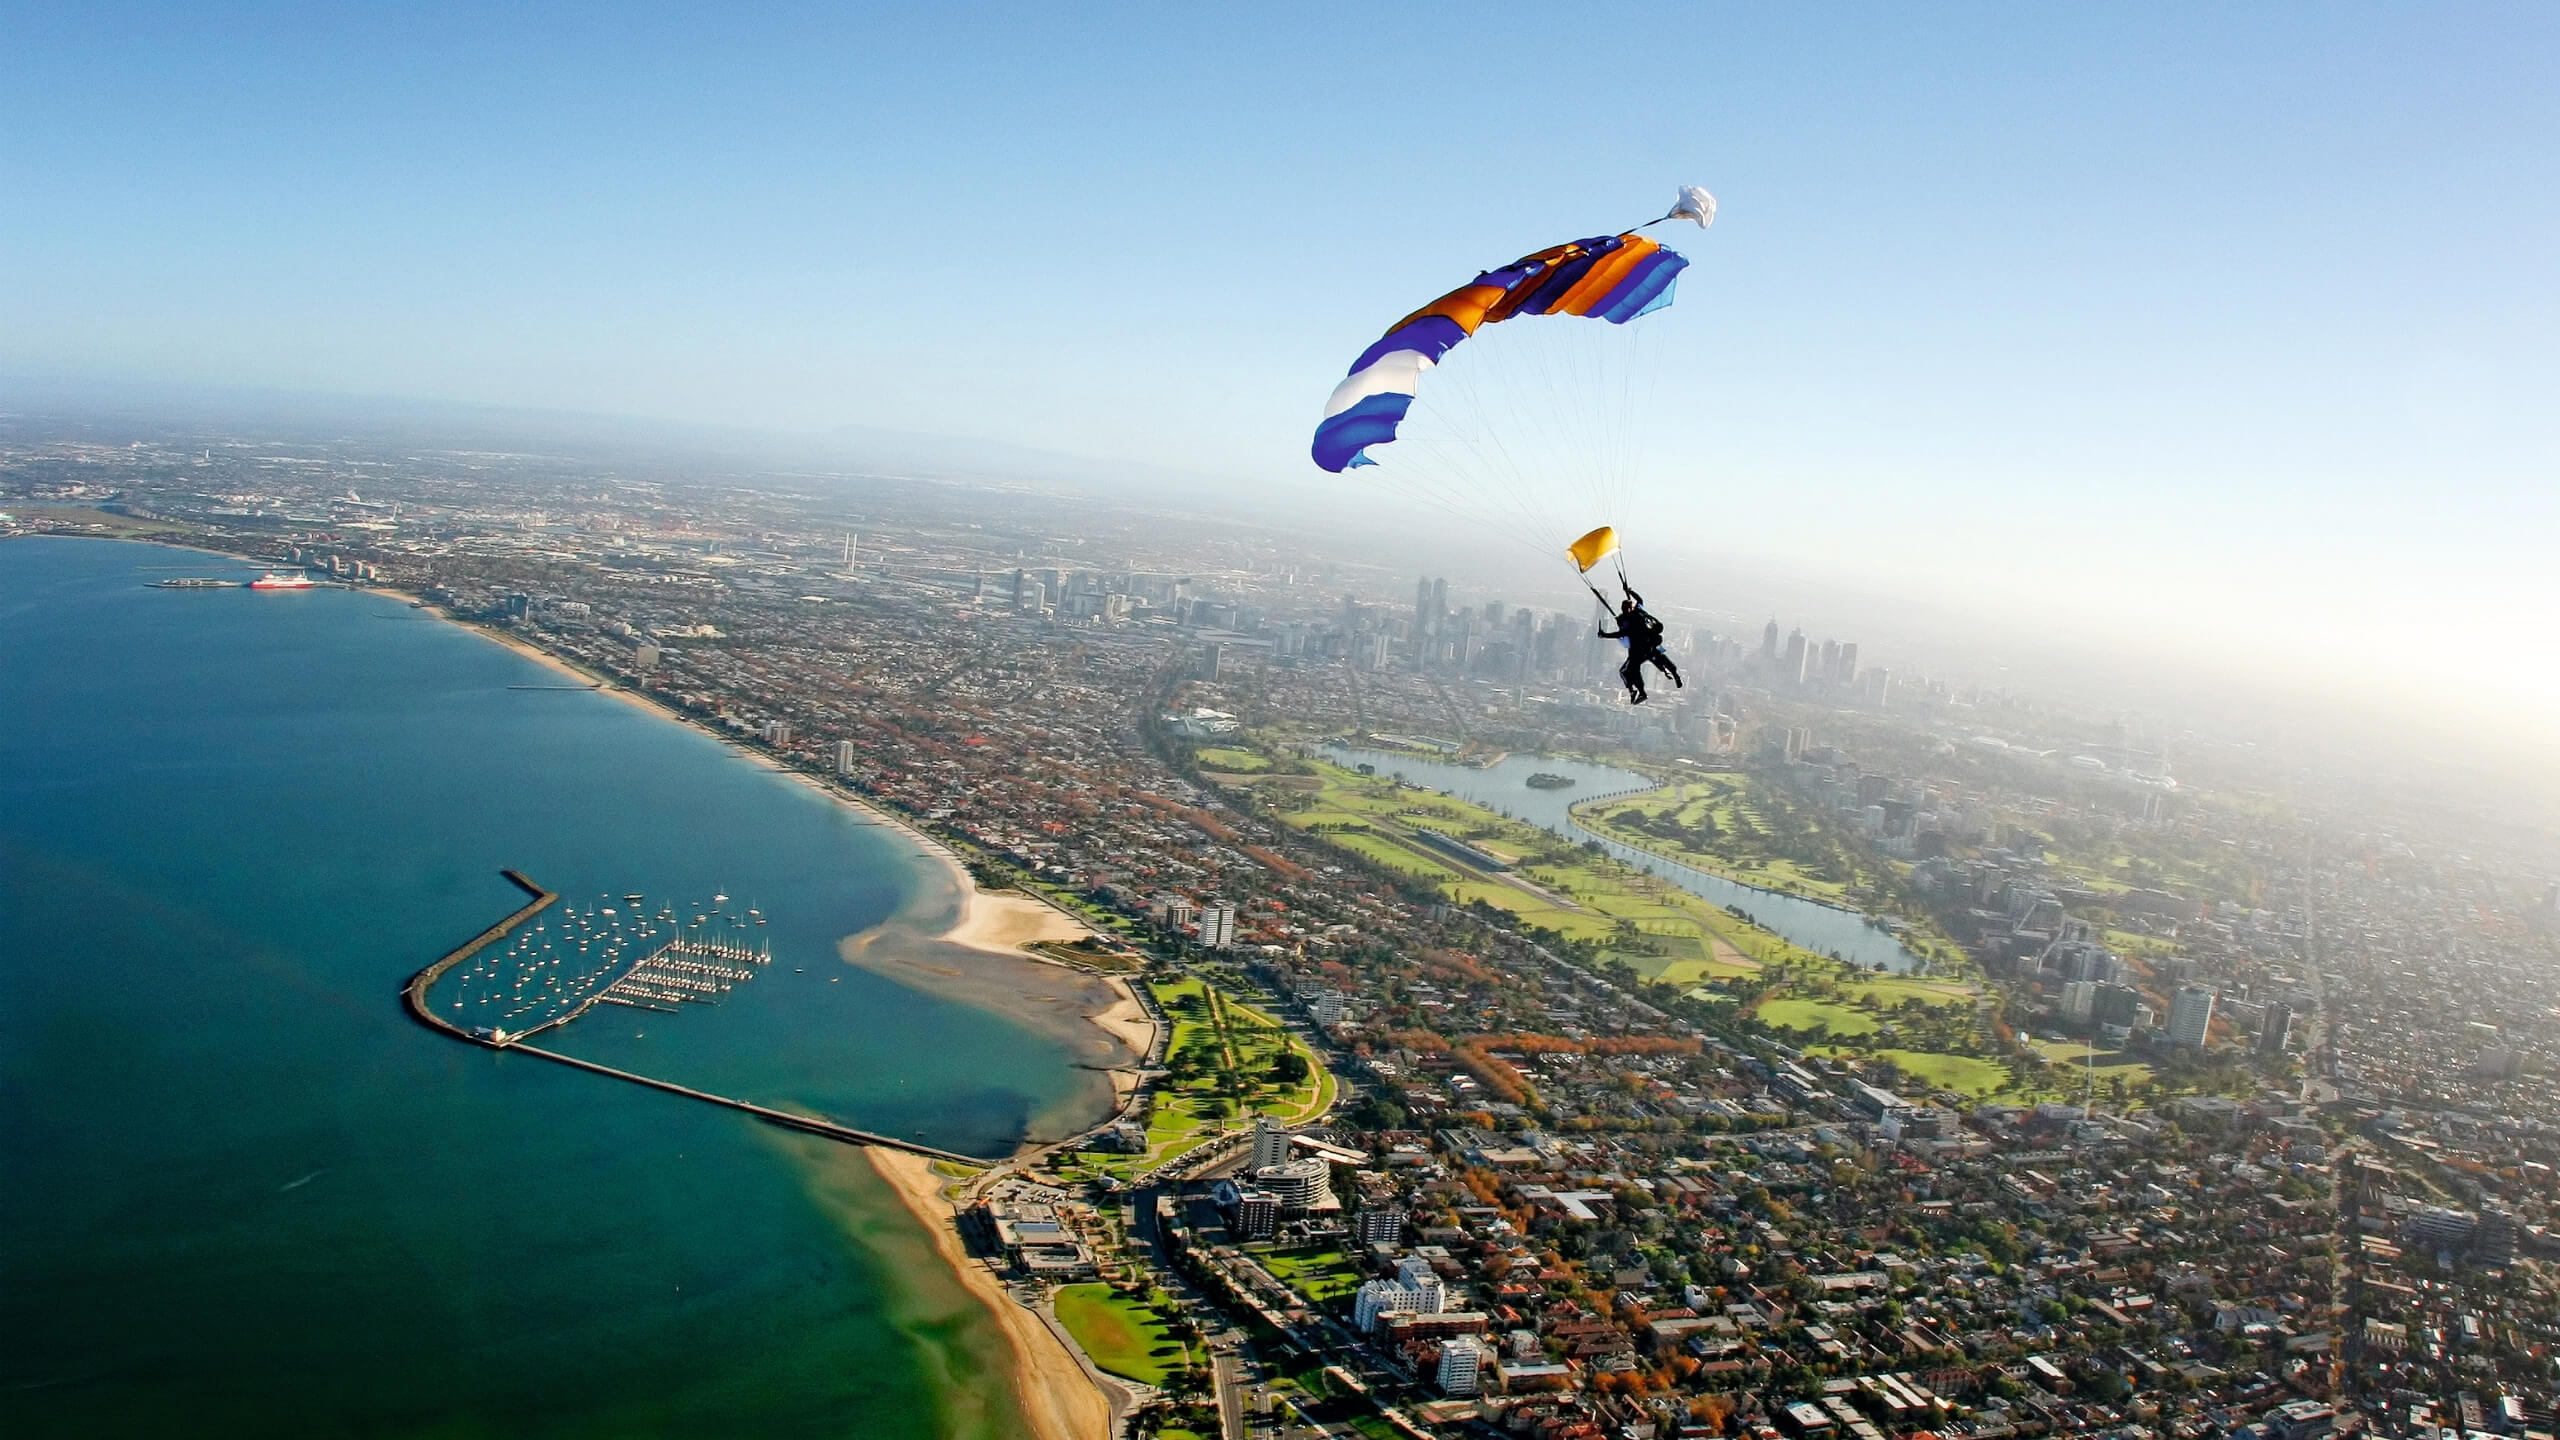 Melbourne Up to 15,000ft Tandem Skydive